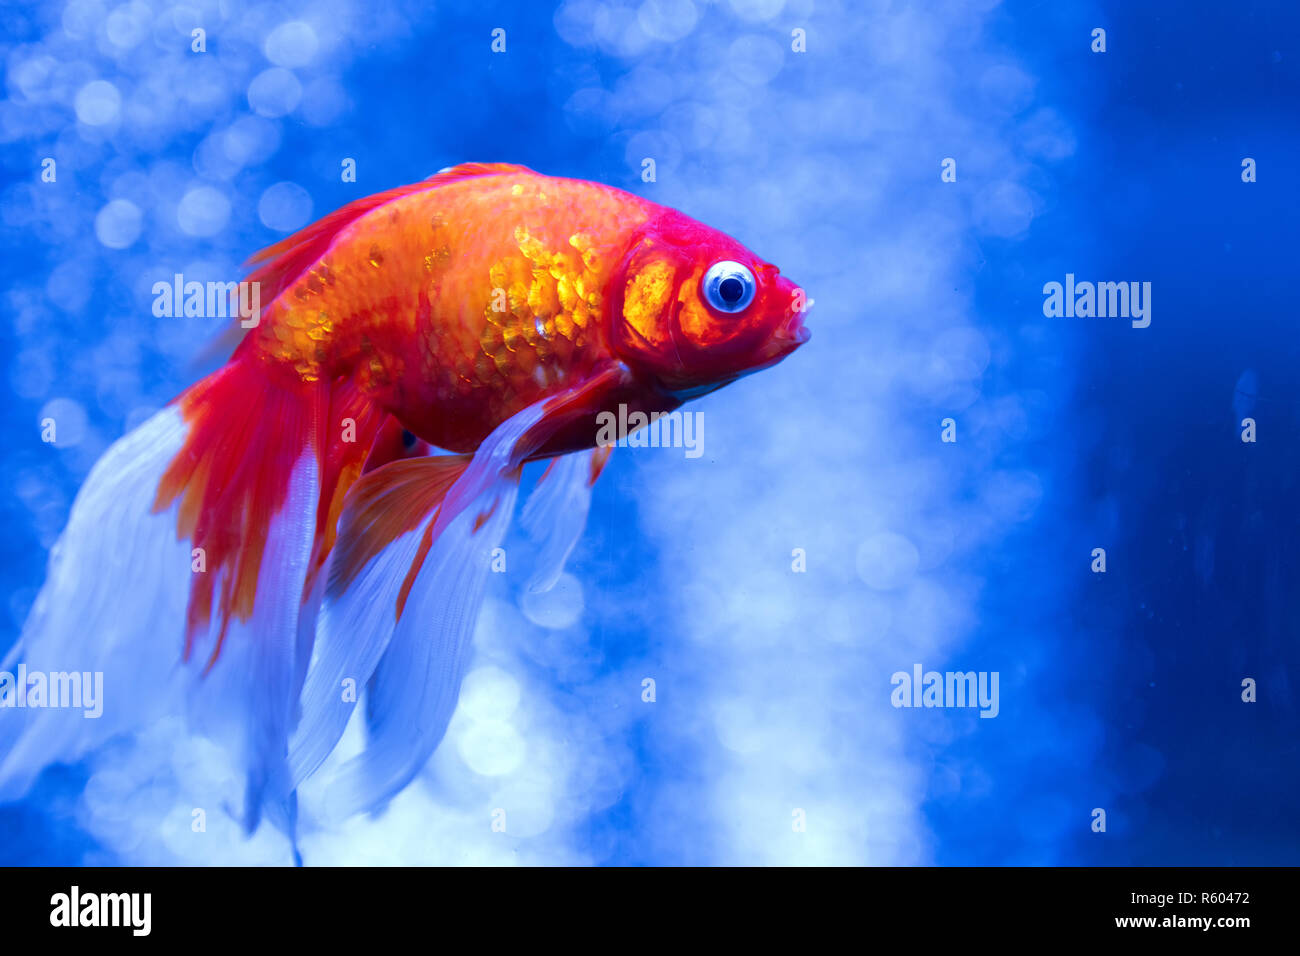 Poisson rouge dans un aquarium avec des bulles Banque D'Images